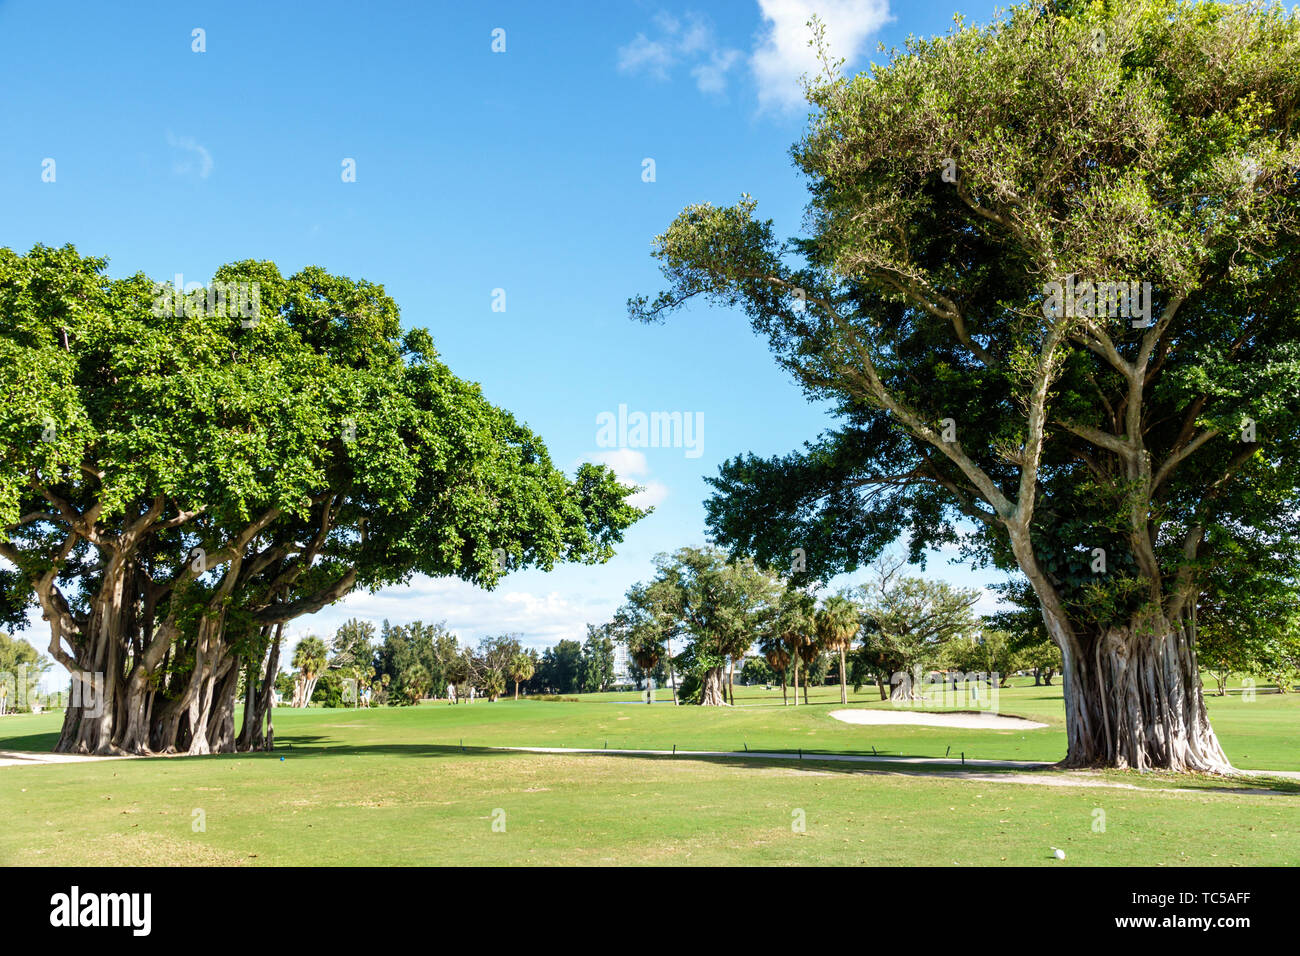 Miami Beach Florida, campo da golf pubblico Normandy Shores, alberi di fico banyan Strangler, radici aeree, FL1902228007 Foto Stock